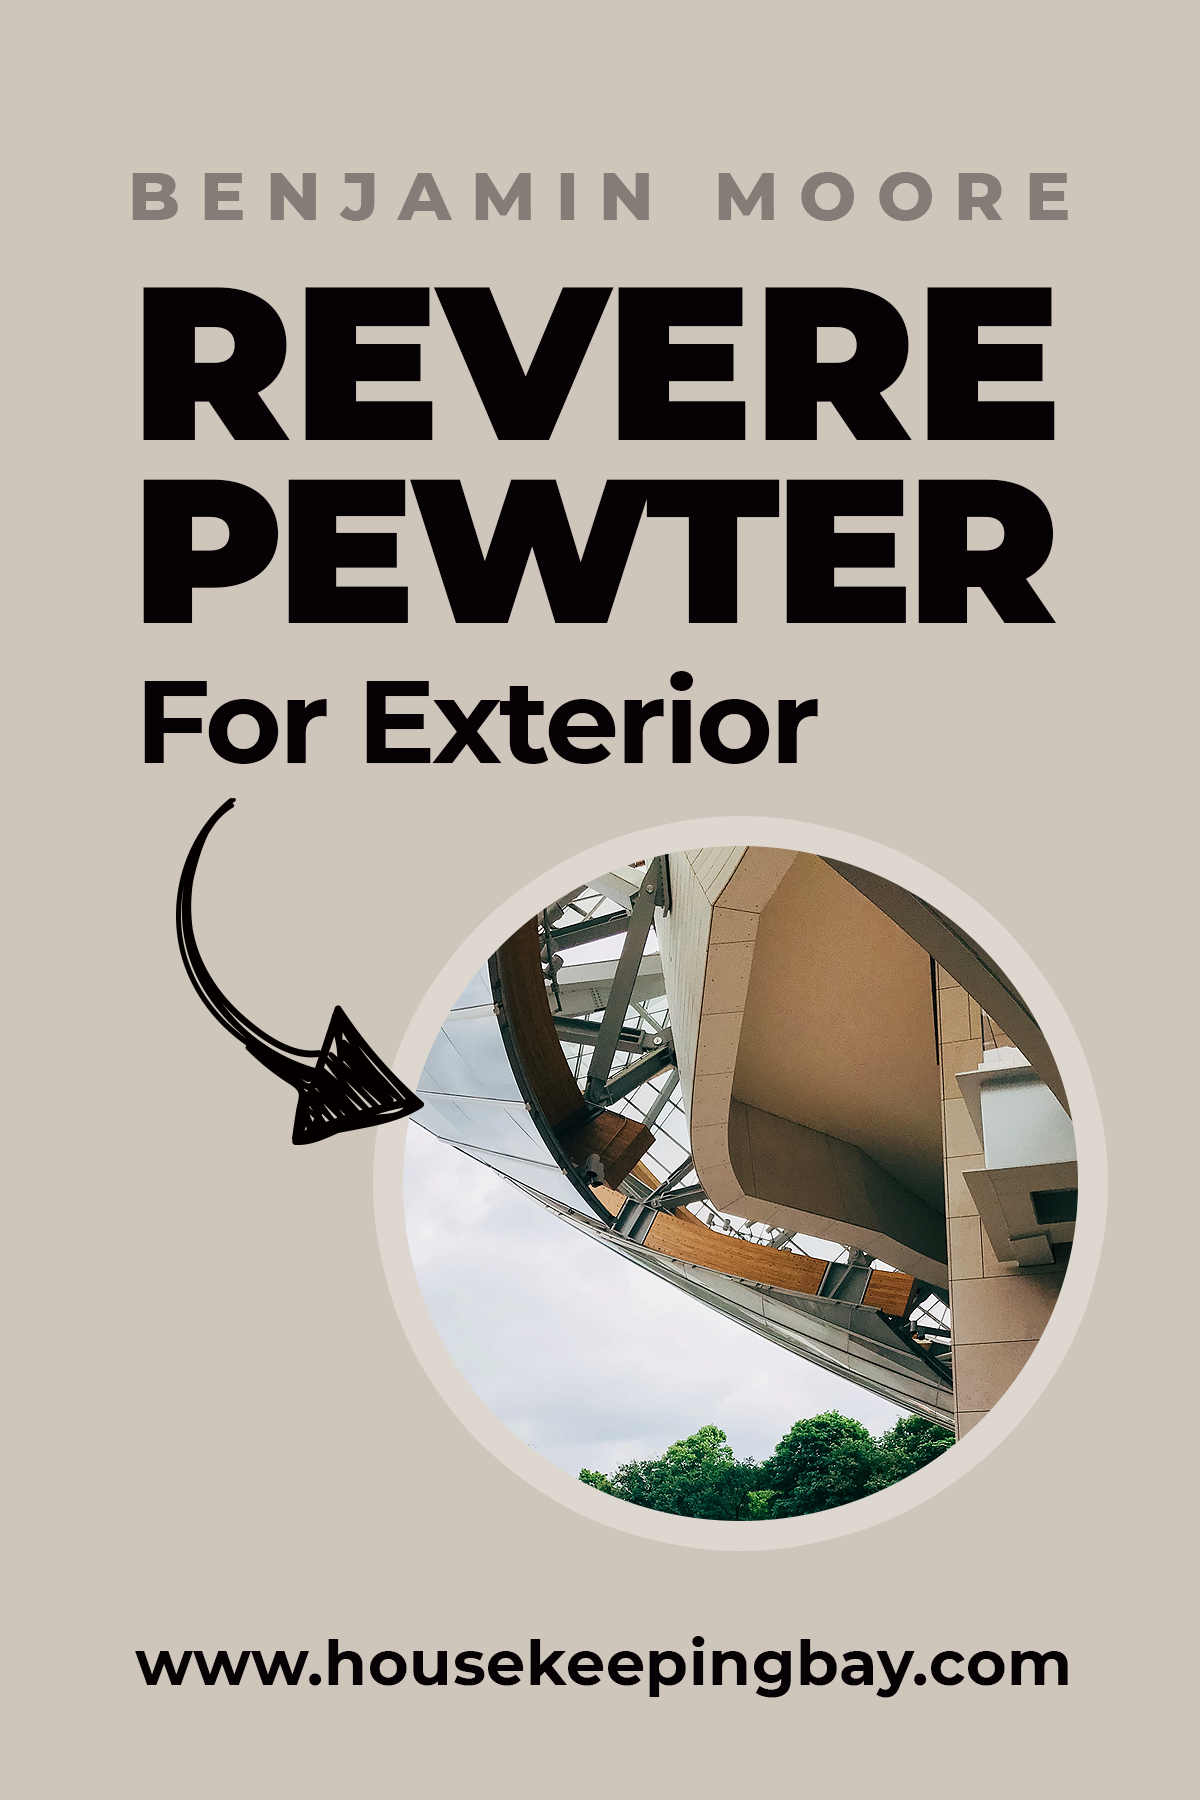 Revere Pewter For Exterior